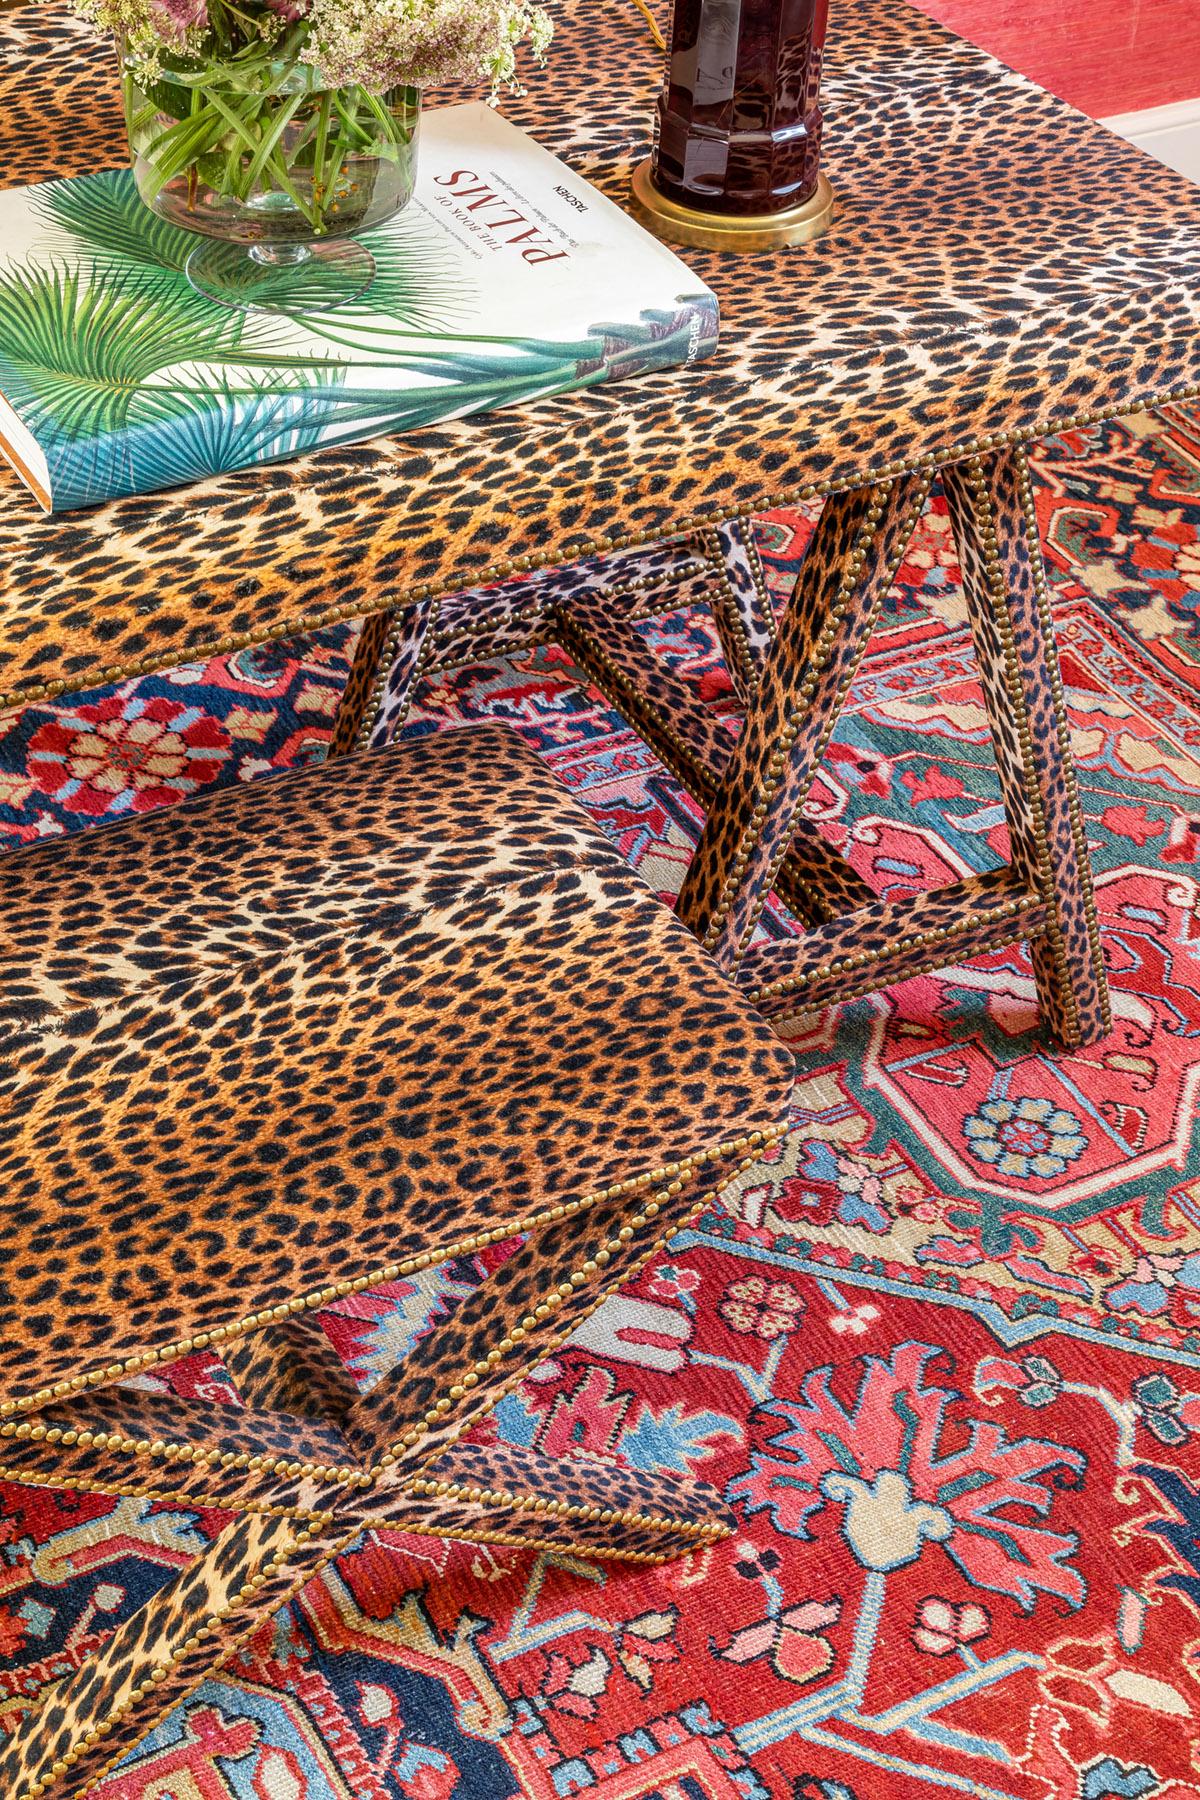 Portuguese The 1940's inspired Matilda Trestle Table in Leopard Velvet For Sale